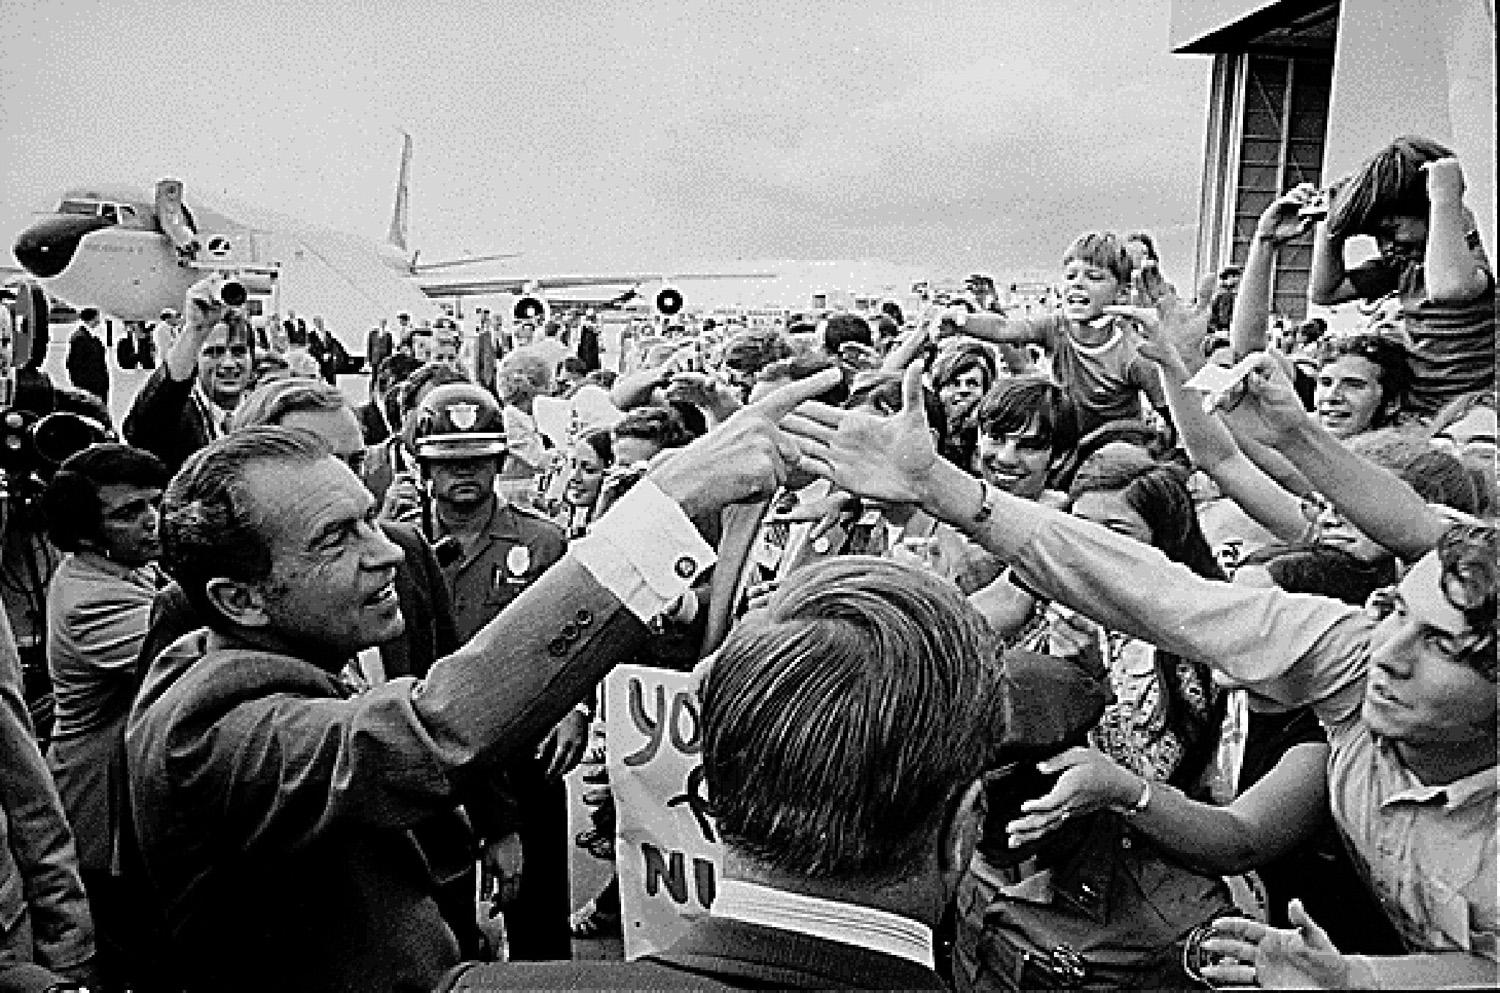 Richard M. Nixon 1972-ben kezdte meg második elnöki ciklusát az USA-ban. Két évvel később a Watergate-botrány miatt le kellett mondania.